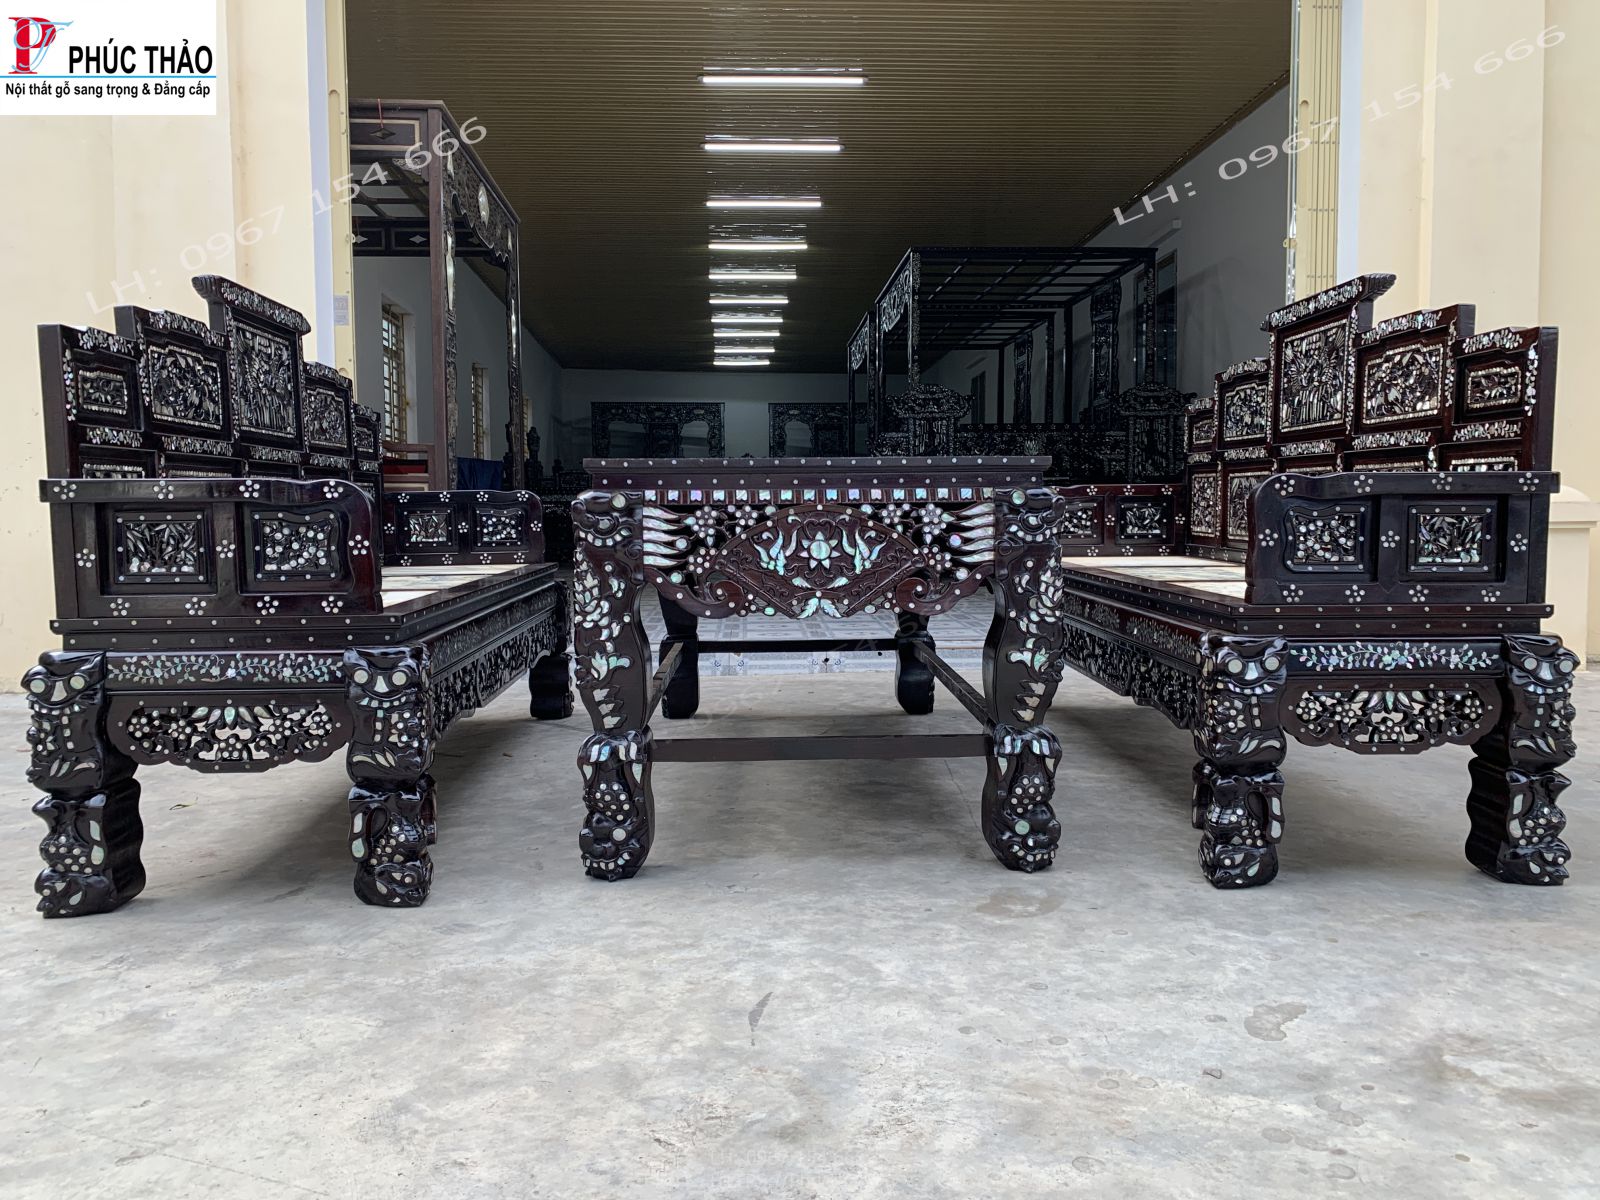 Cơ sở đồ gỗ Phúc Thảo sản xuất trường kỷ đẹp tại Sơn La